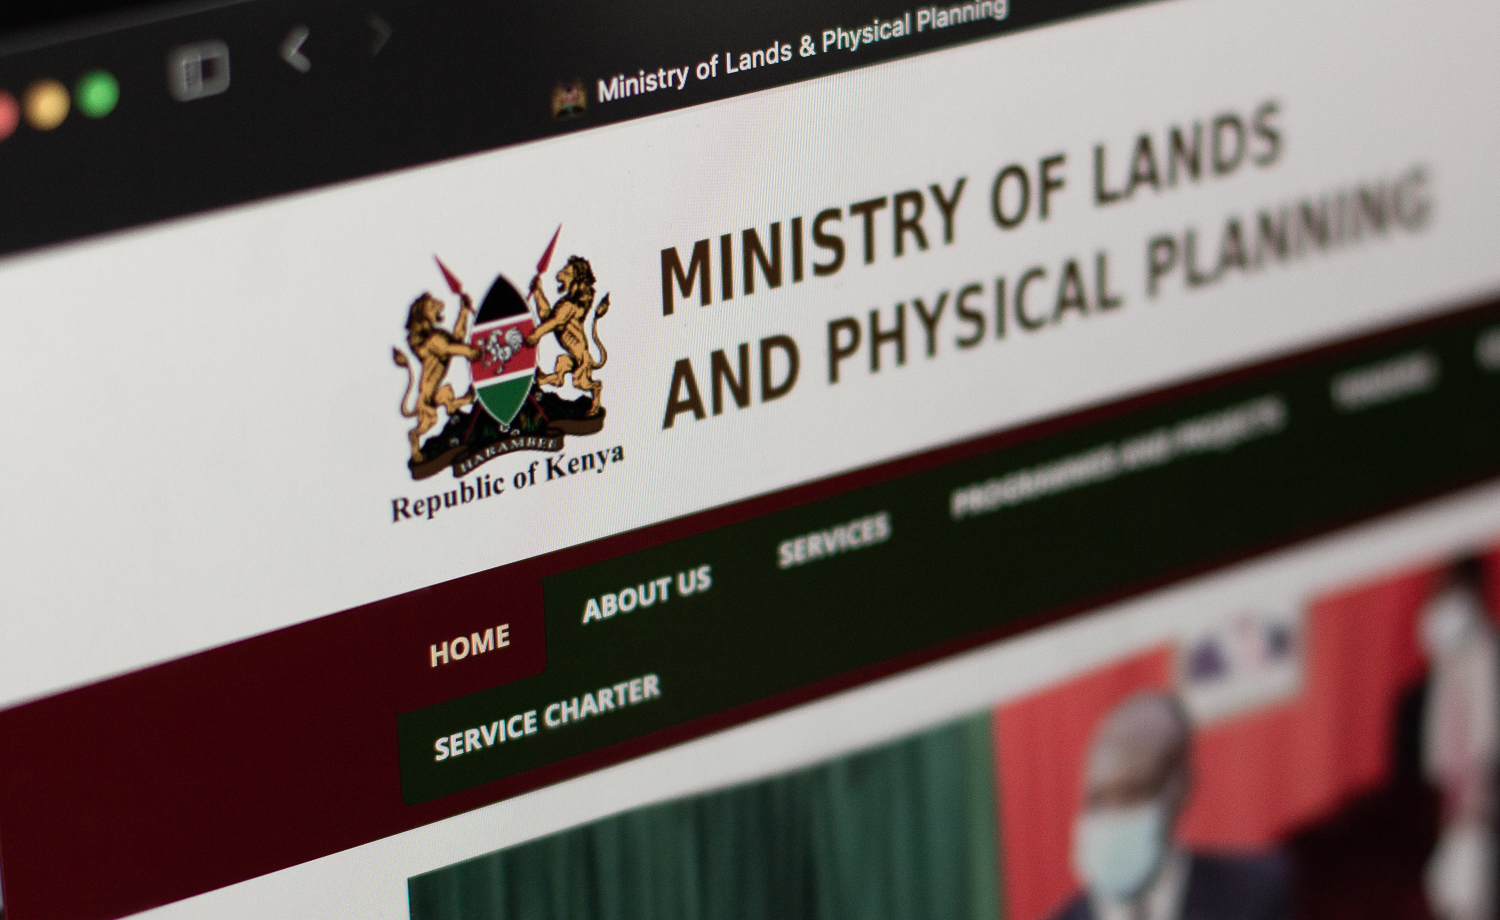 Ministry of Lands website